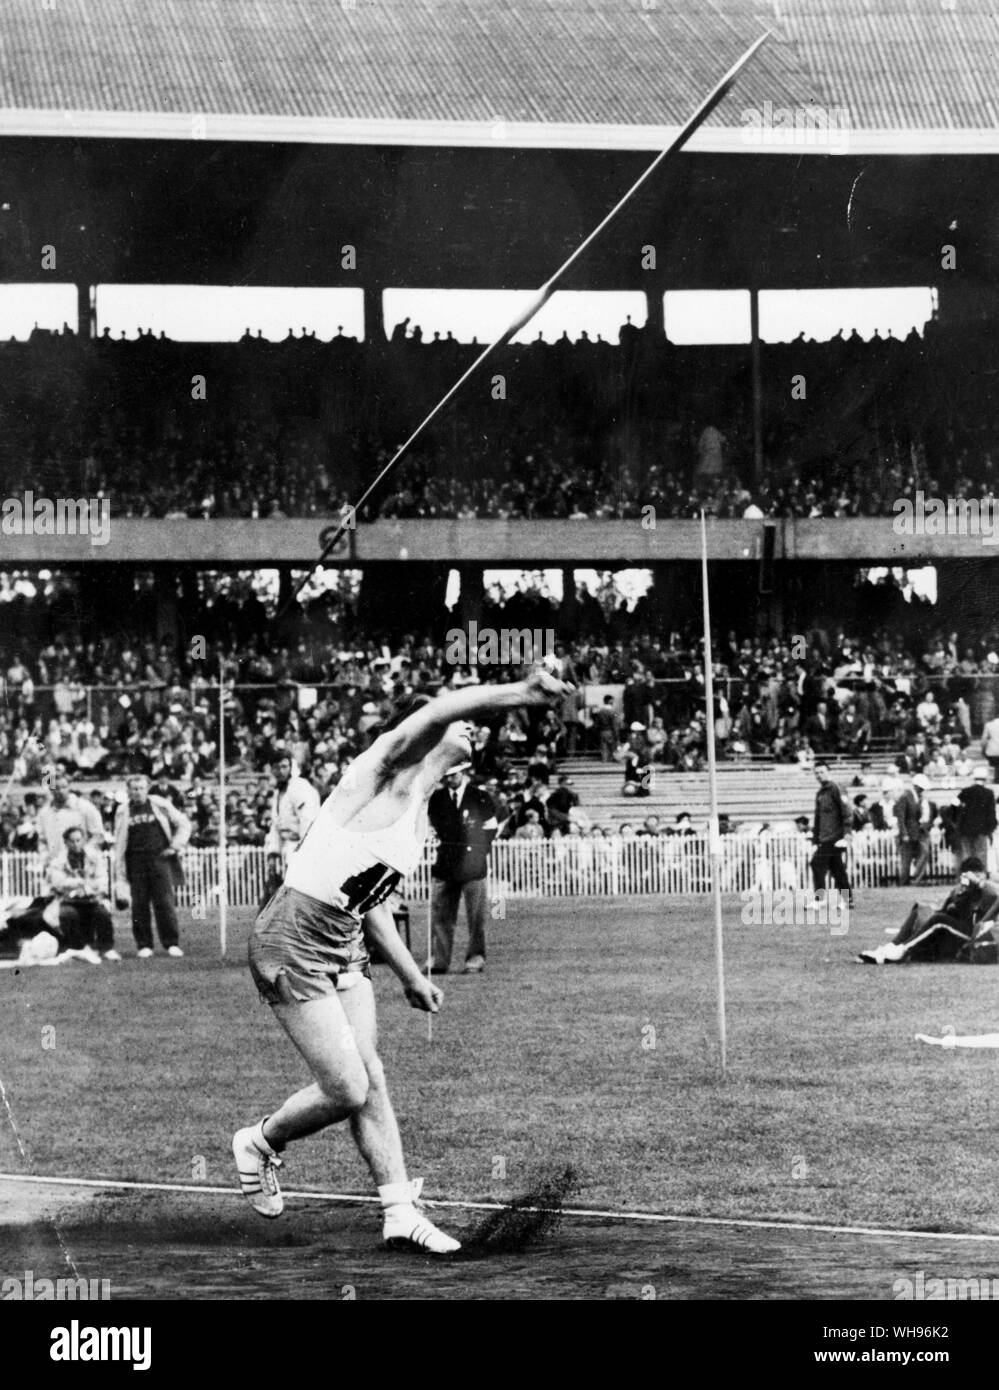 Aus., Melbourne, Jeux Olympiques, 1956 : Egil Danielsen (Norvège) gagner le jet dans le javelot.. Banque D'Images